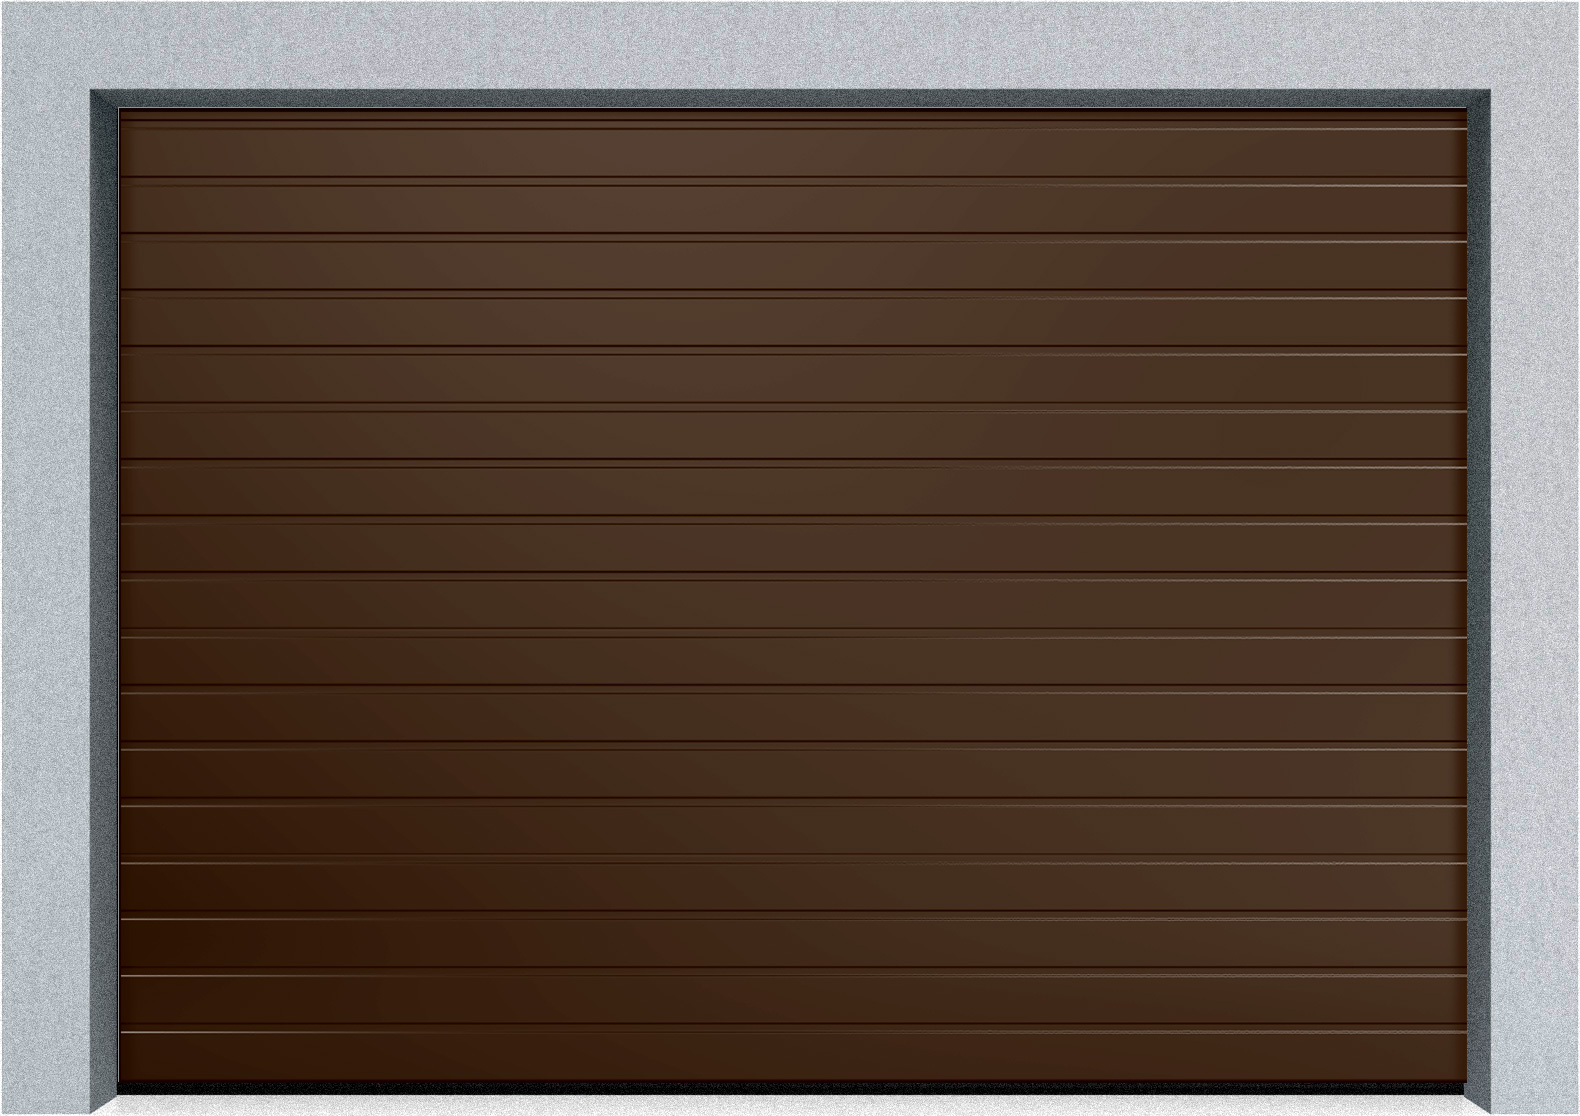  Секционные гаражные ворота DoorHan RSD01 2500x2300 S-гофр, M-гофр, Микроволна стандартные цвета, пружины растяжения, фото 2 